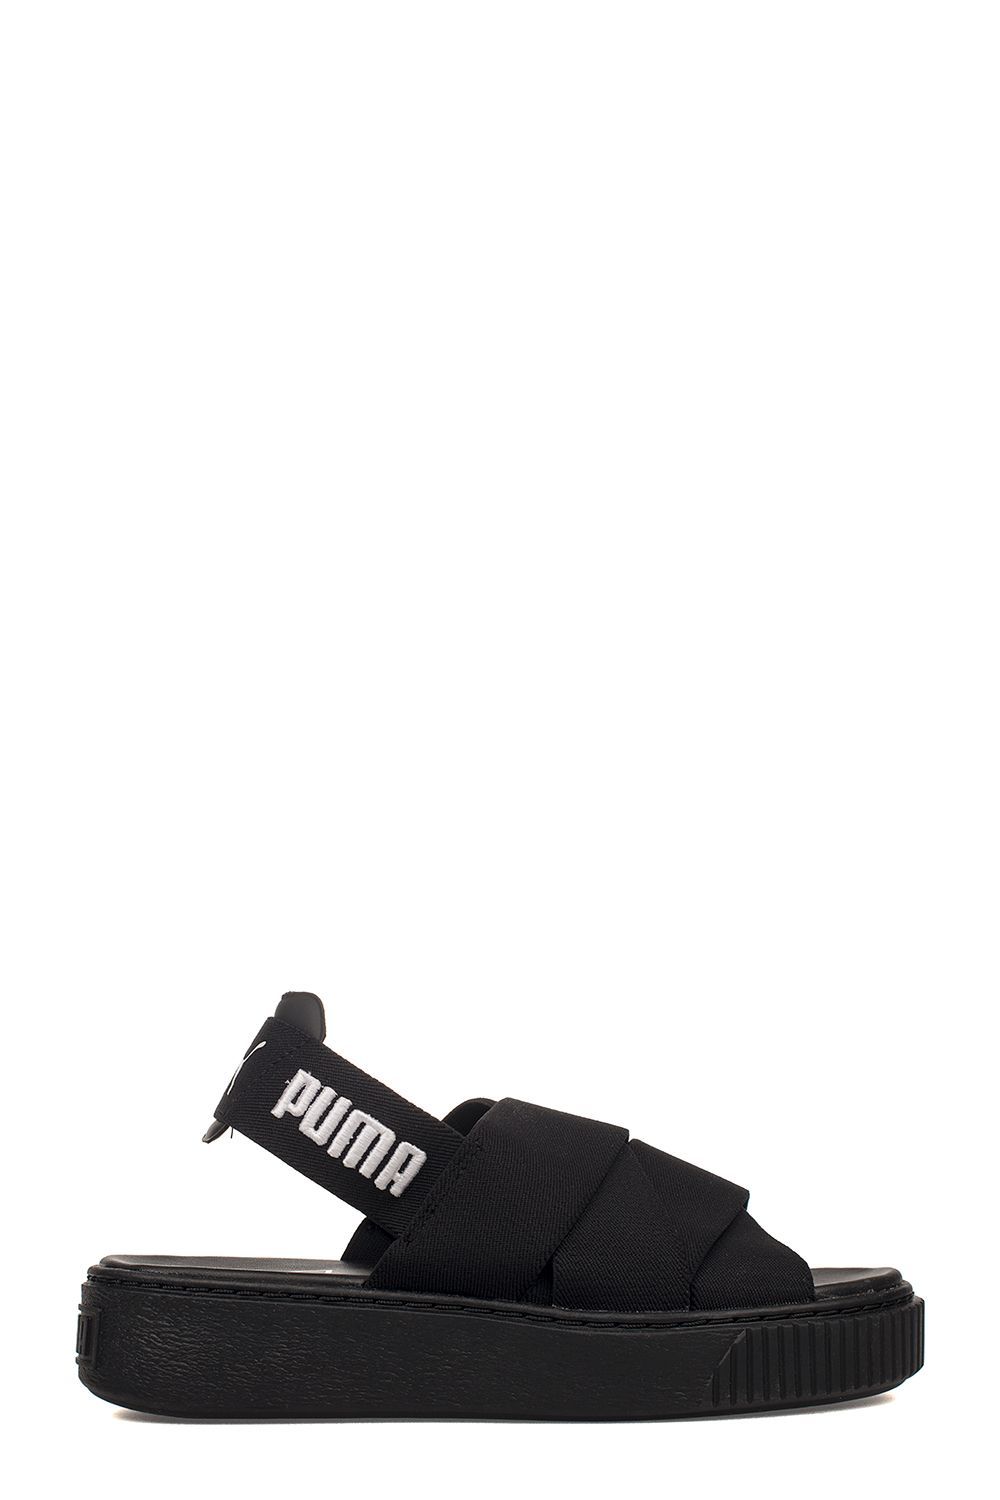 Puma Black Platform Sandal | Italist.com US